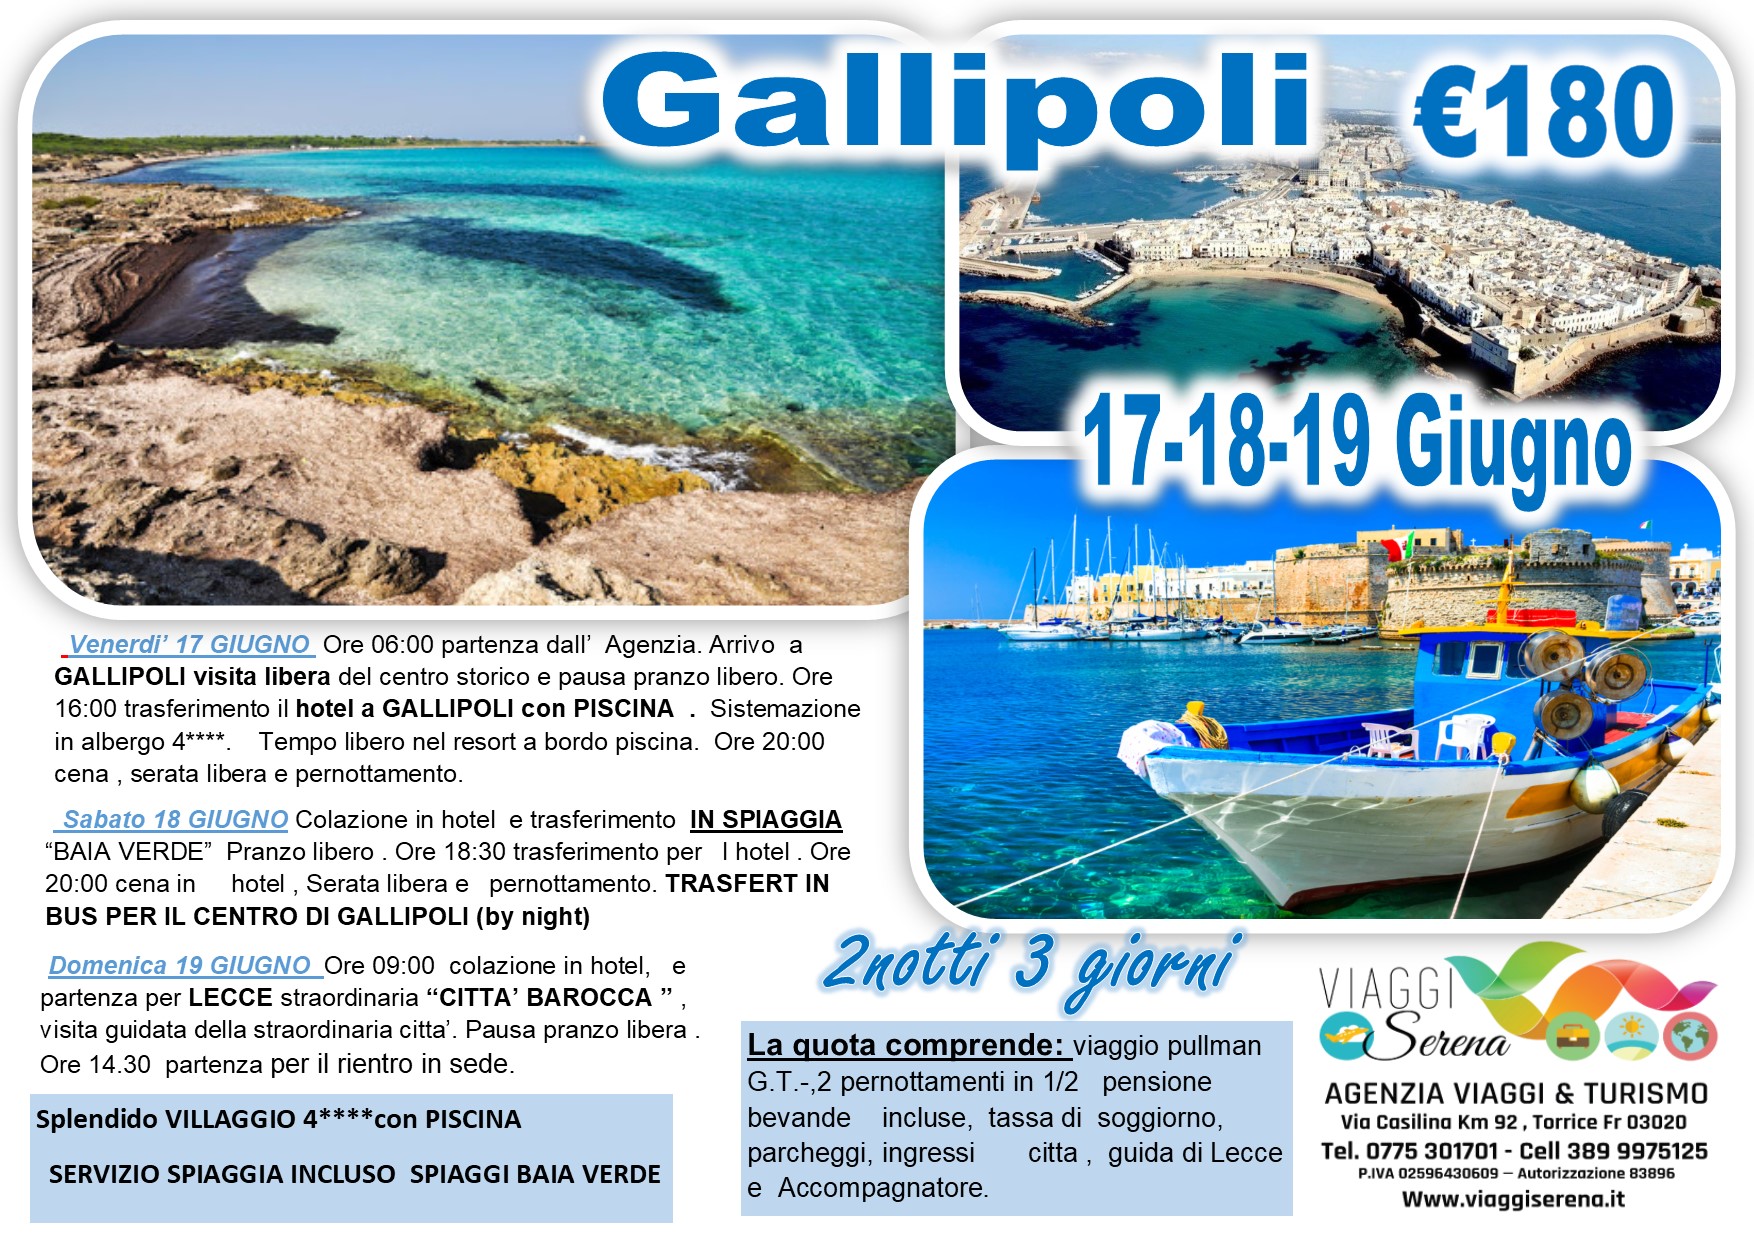 Viaggi di Gruppo: Gallipoli , spiaggia Baia Verde & Lecce 17-18-19 Giugno €180,00